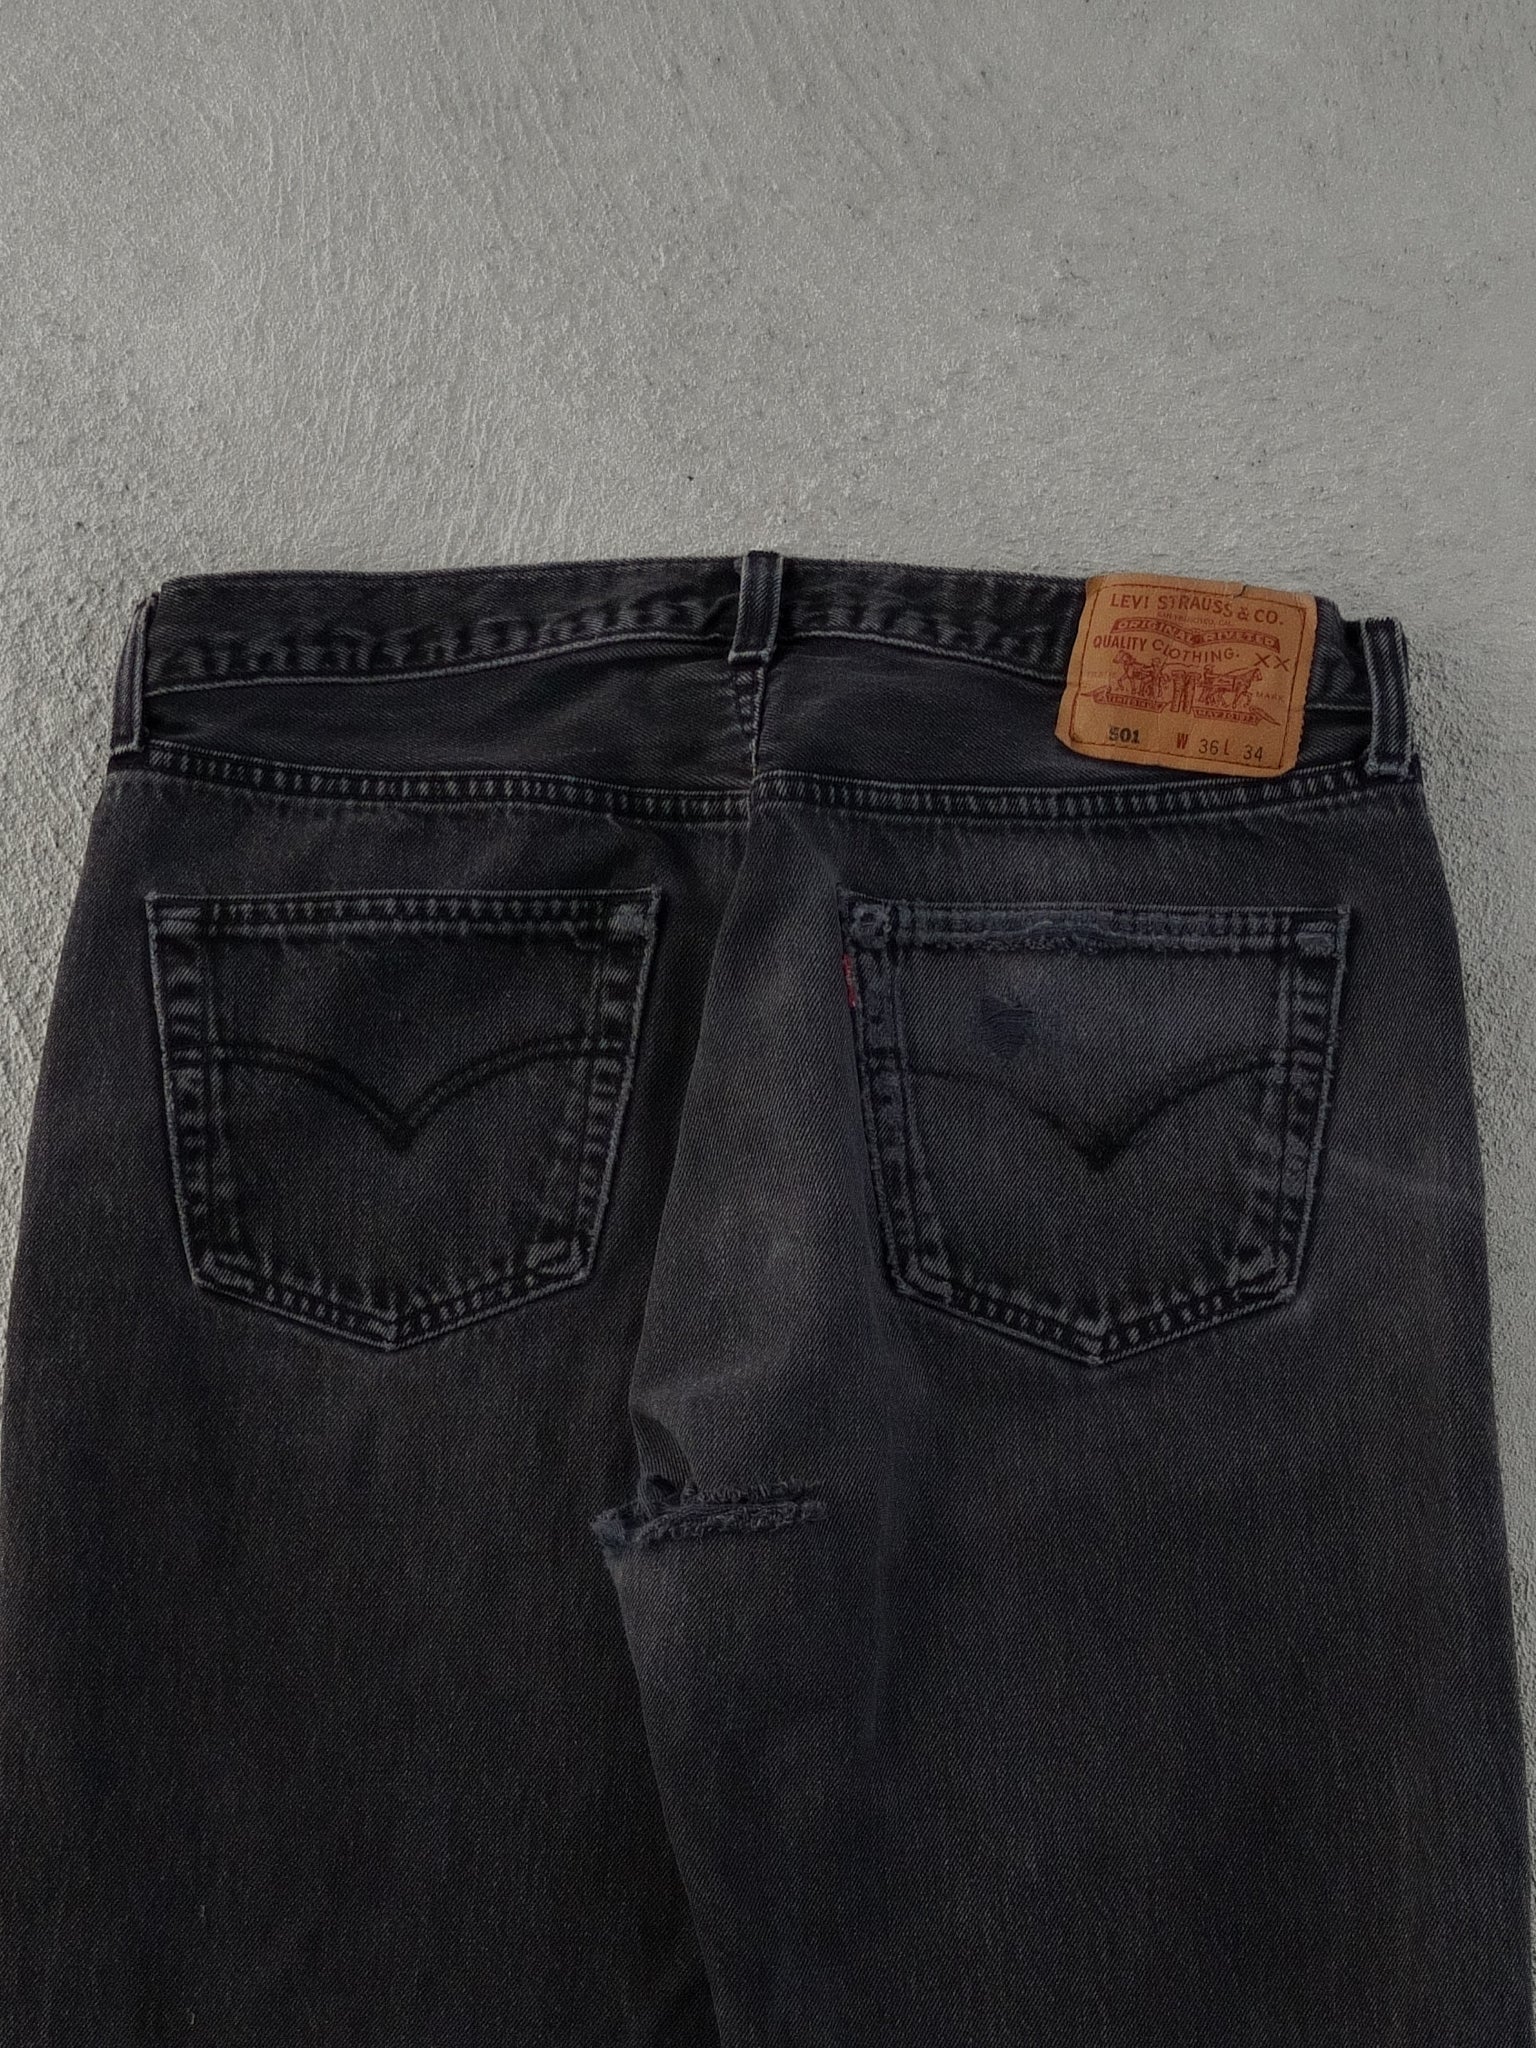 Vintage 90s Black Levi's 501 Denim Pants (36x28)